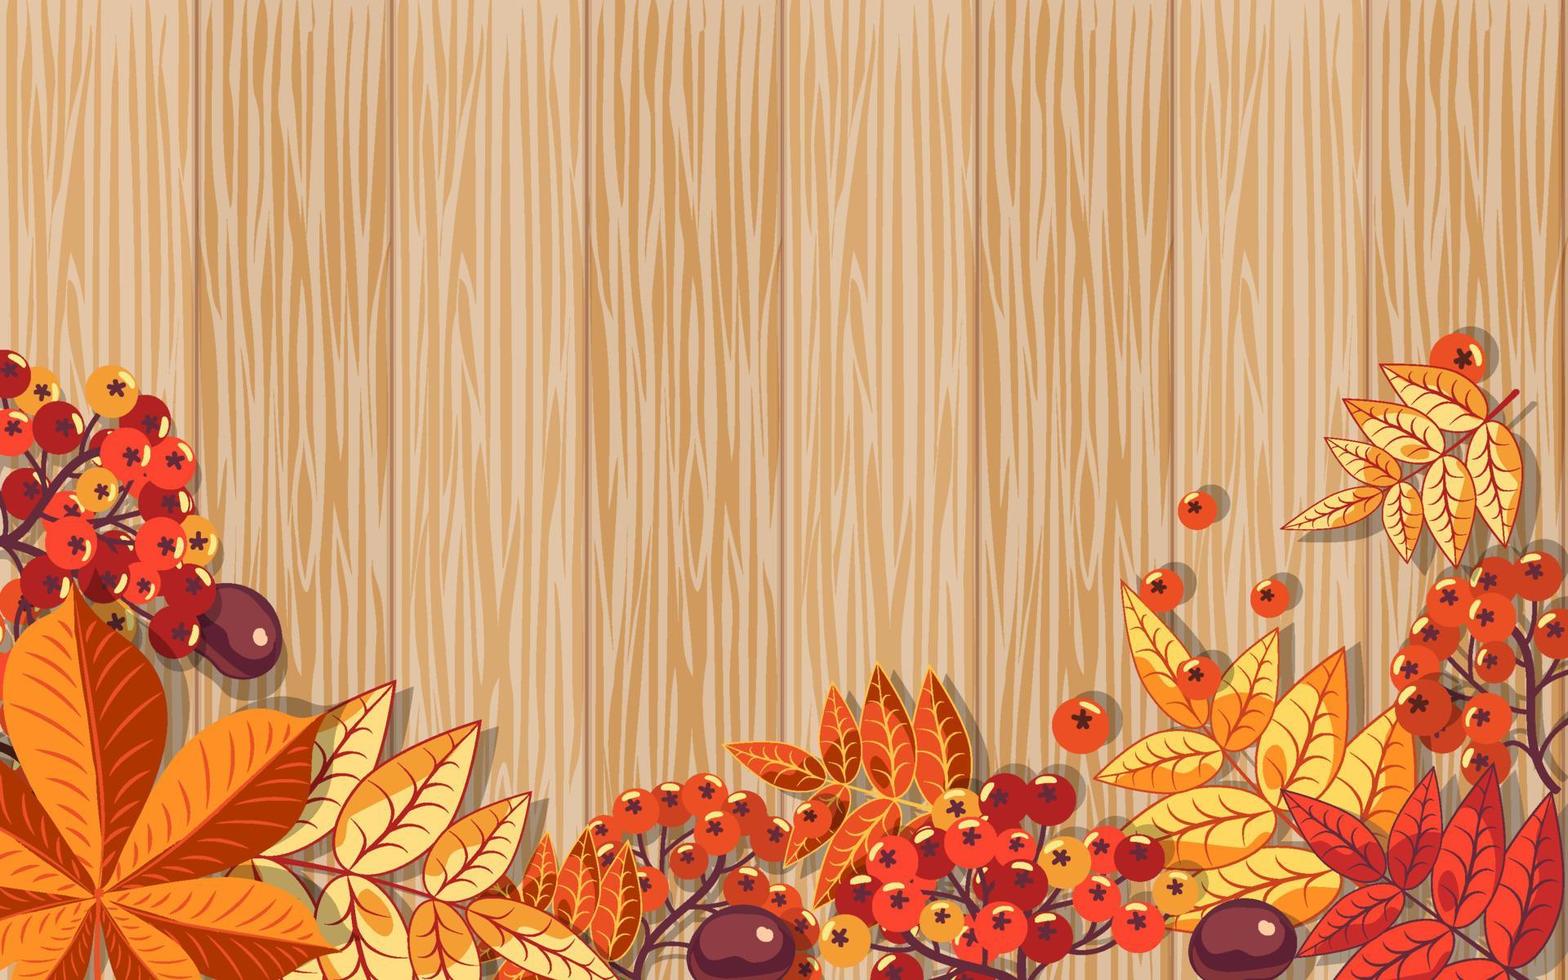 Herbsthintergrund von roten Vogelbeeren und Kastanienblättern auf einem hölzernen Hintergrund. vektor